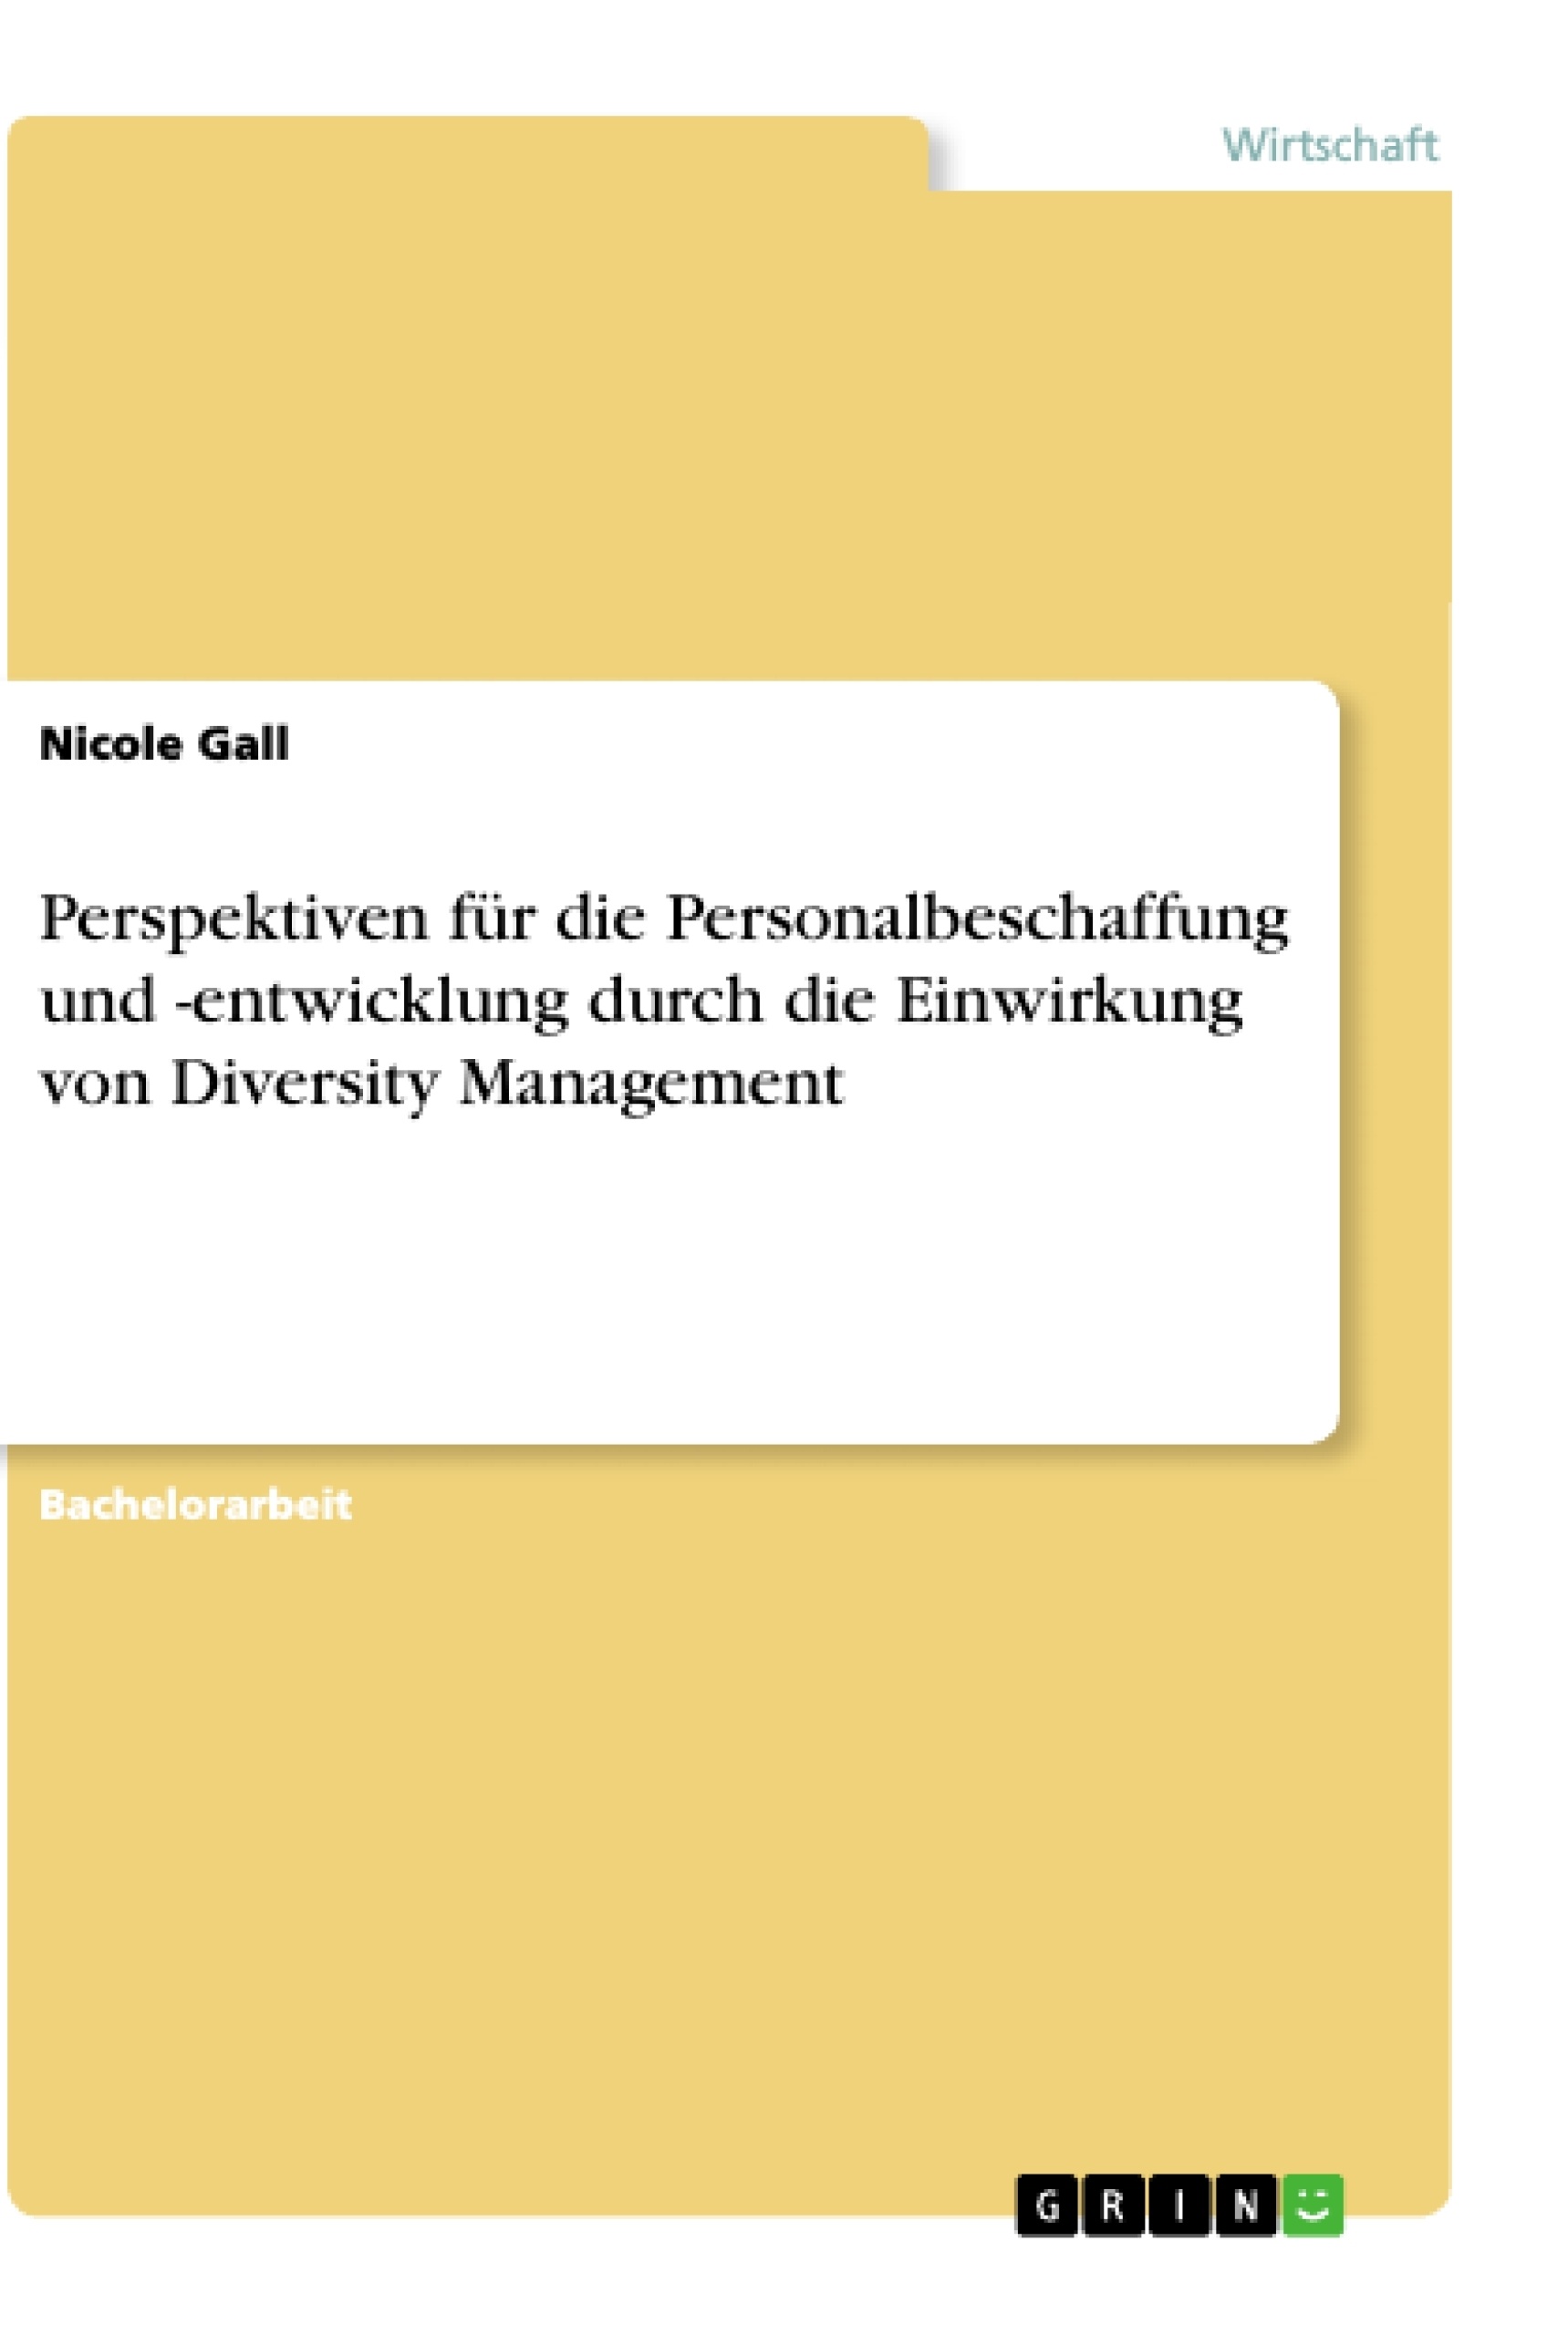 Título: Perspektiven für die Personalbeschaffung und -entwicklung durch die Einwirkung von Diversity Management